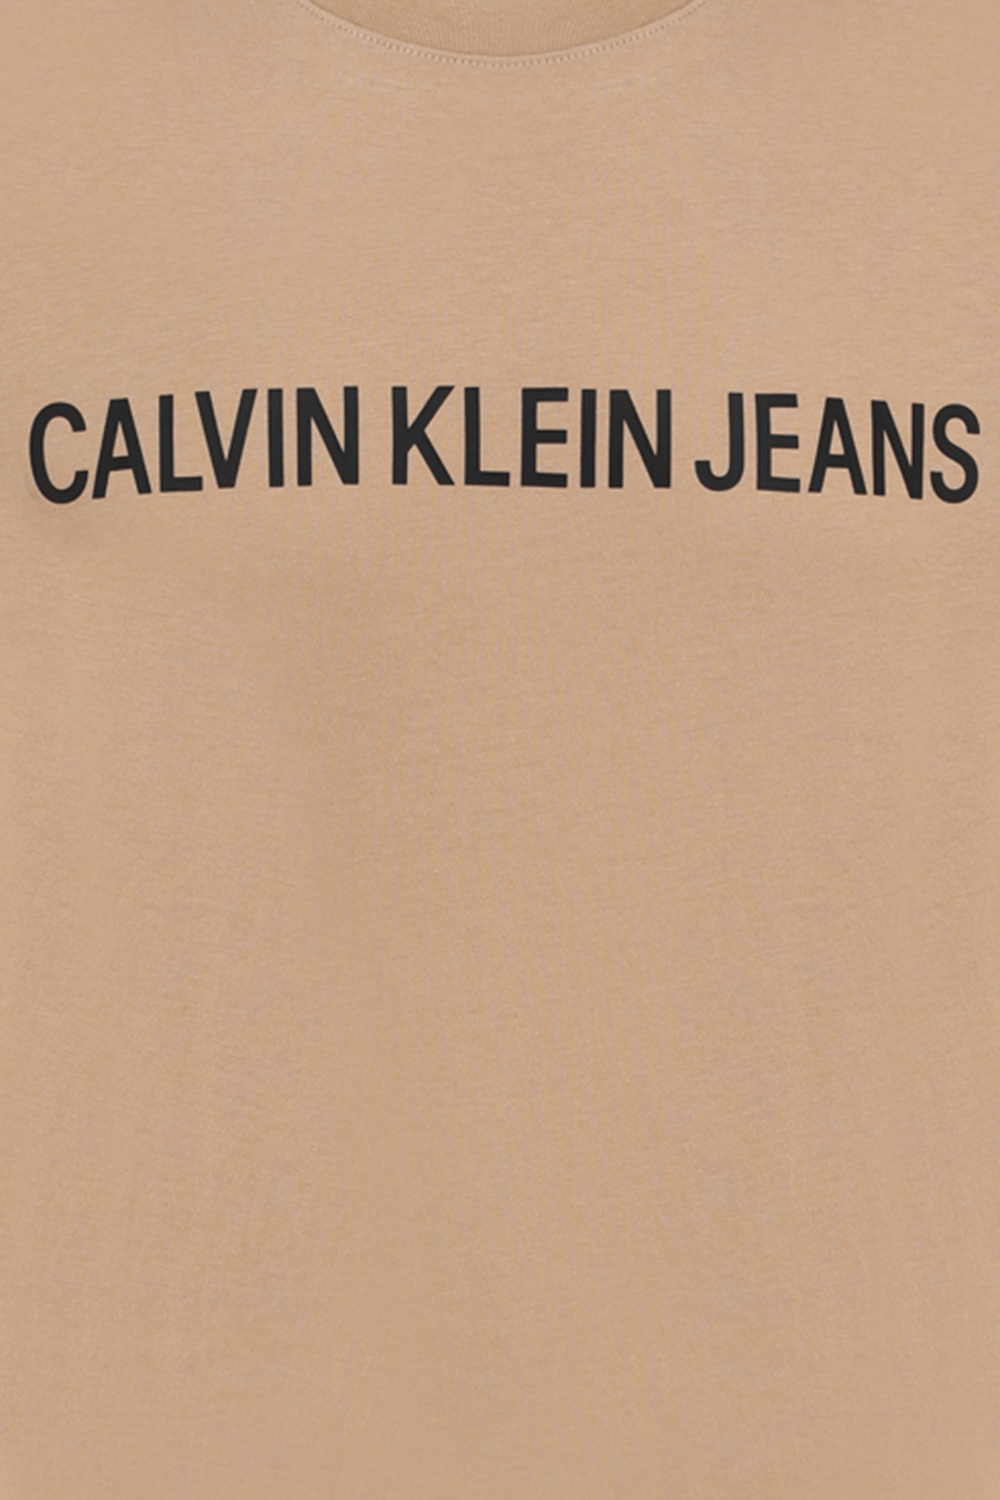 חולצת טי עם שם המותג בגוון חום בהיר CALVIN KLEIN